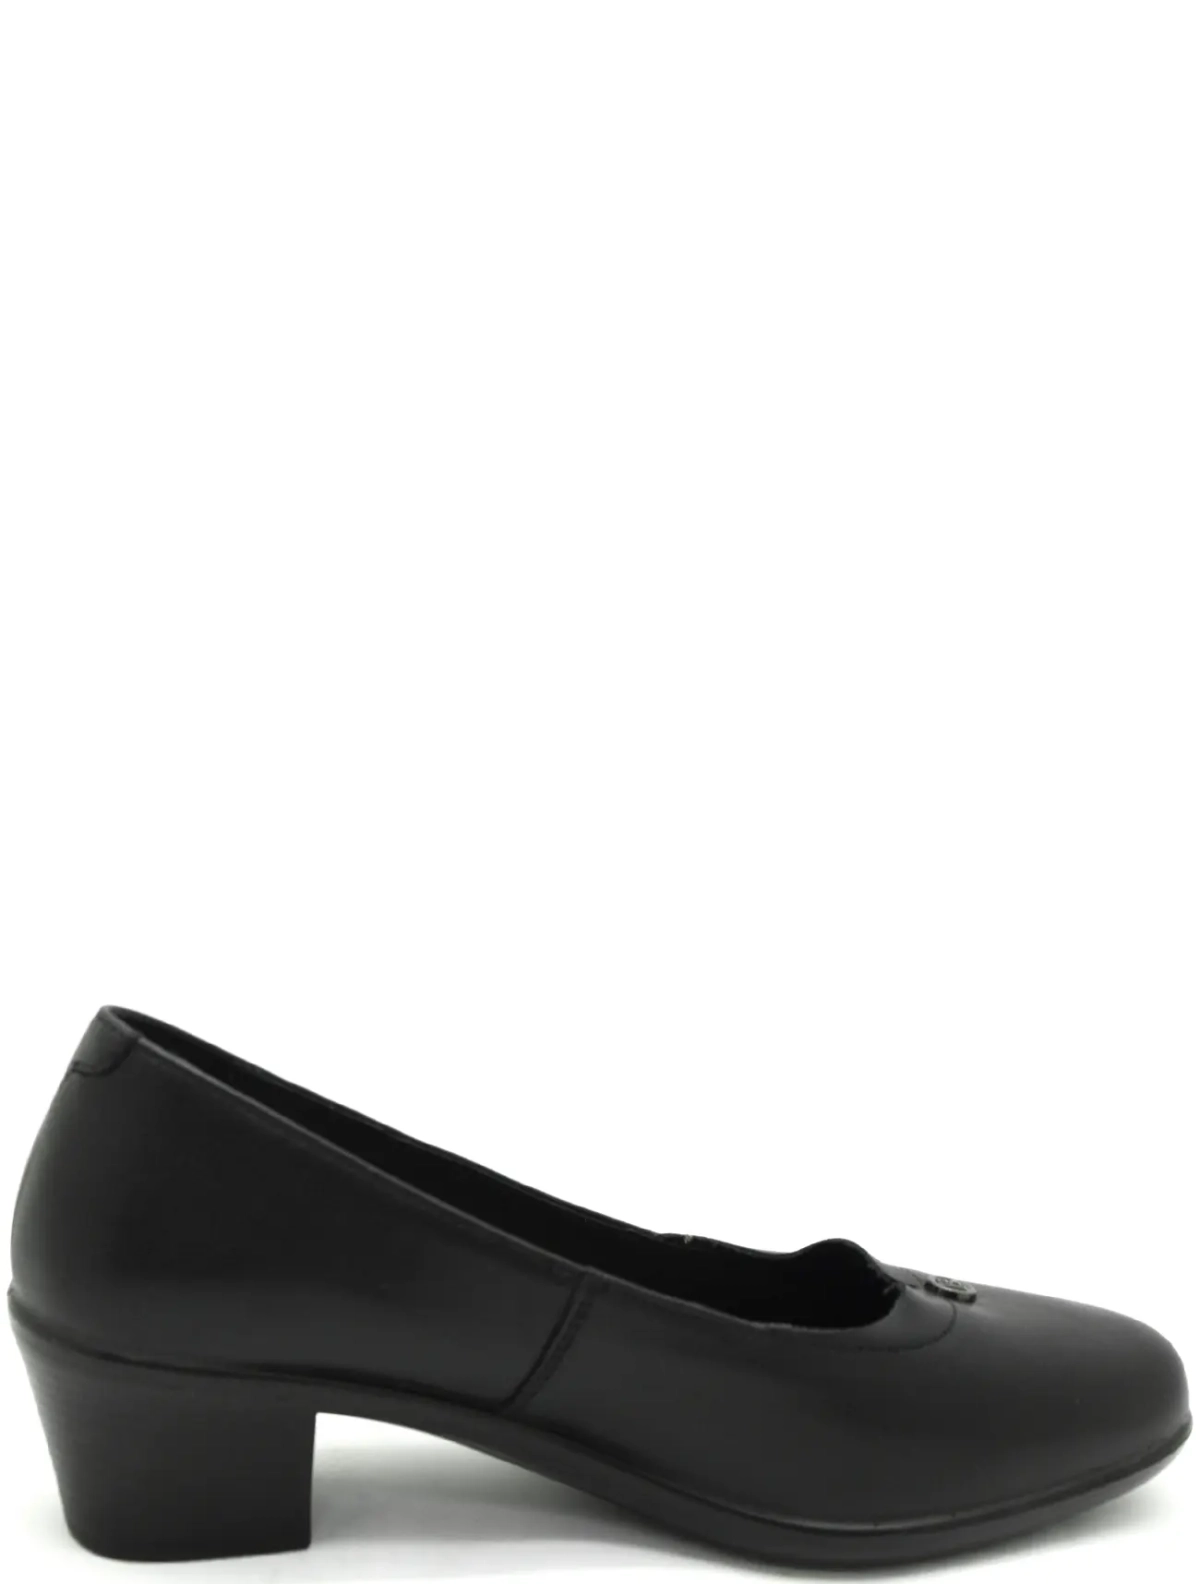 Baden CV281-090 женские туфли